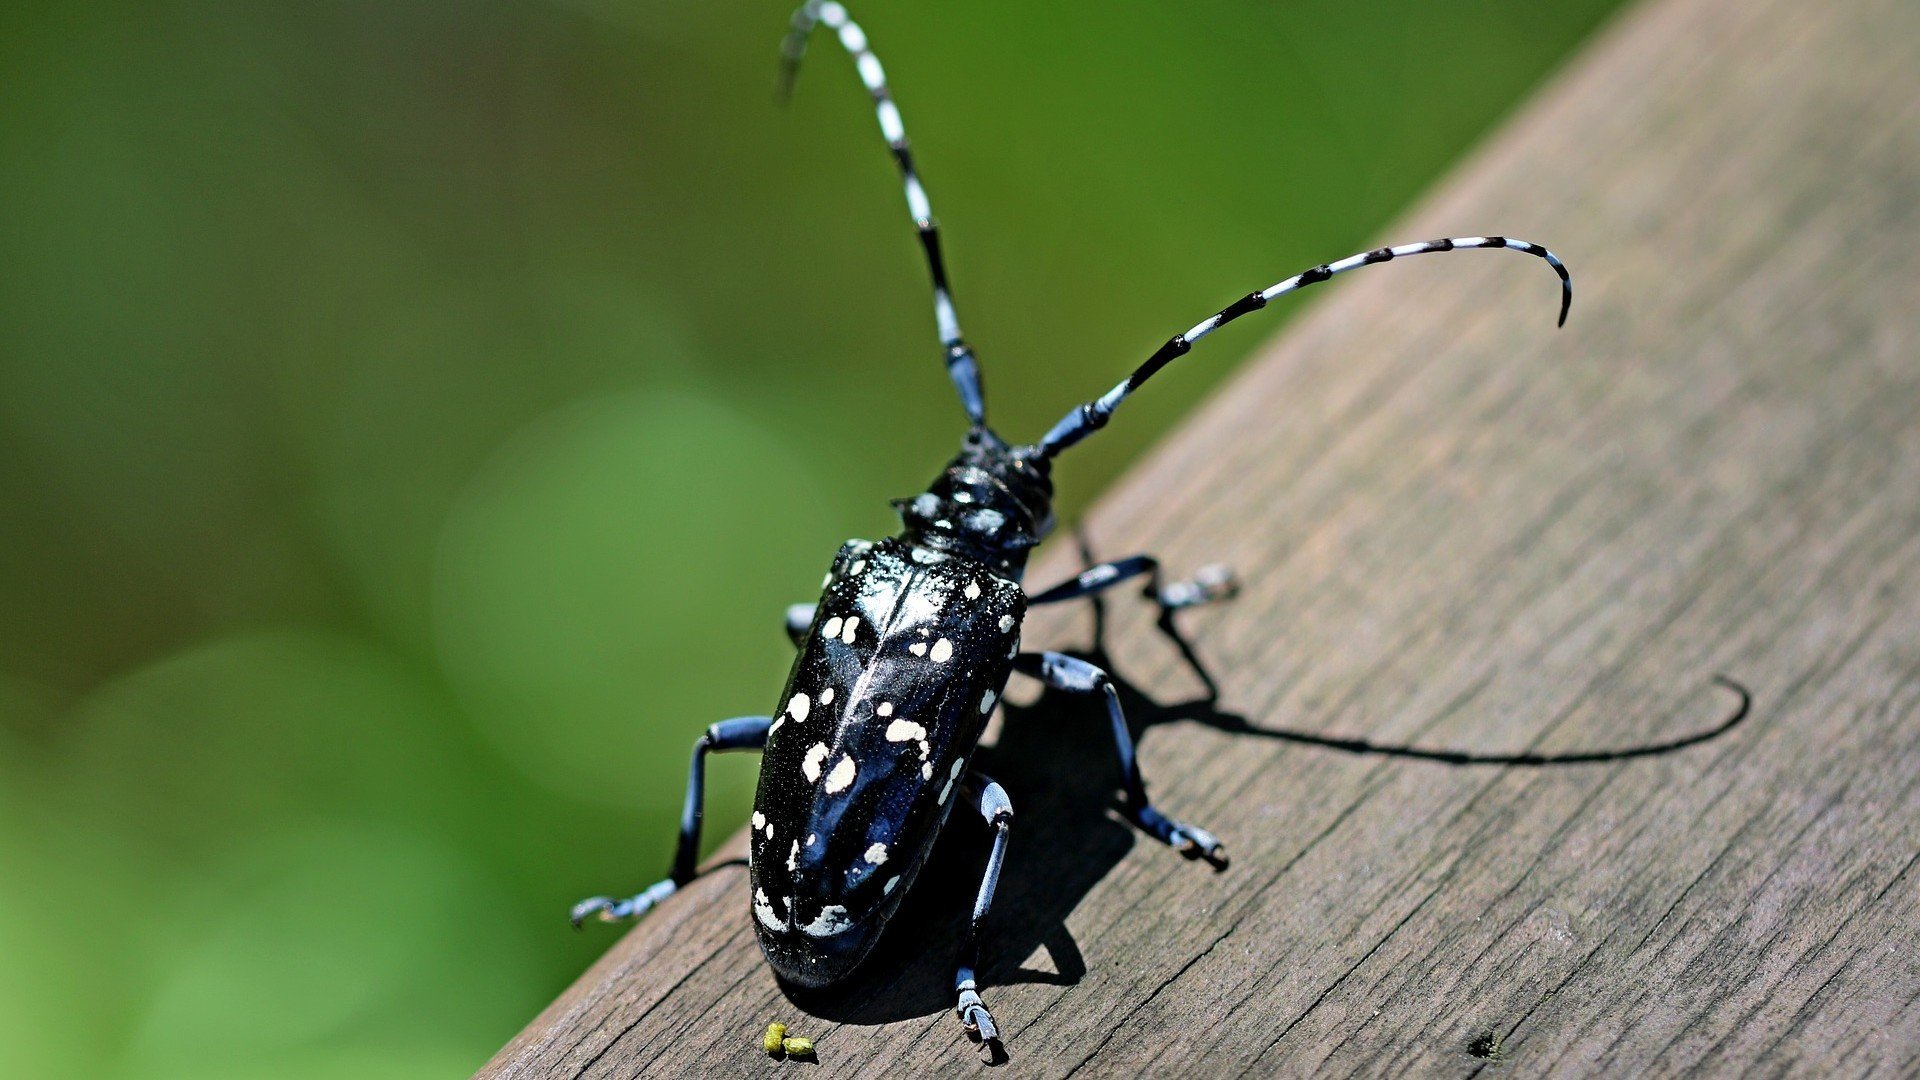 Большой черный жук с длинными усами фото